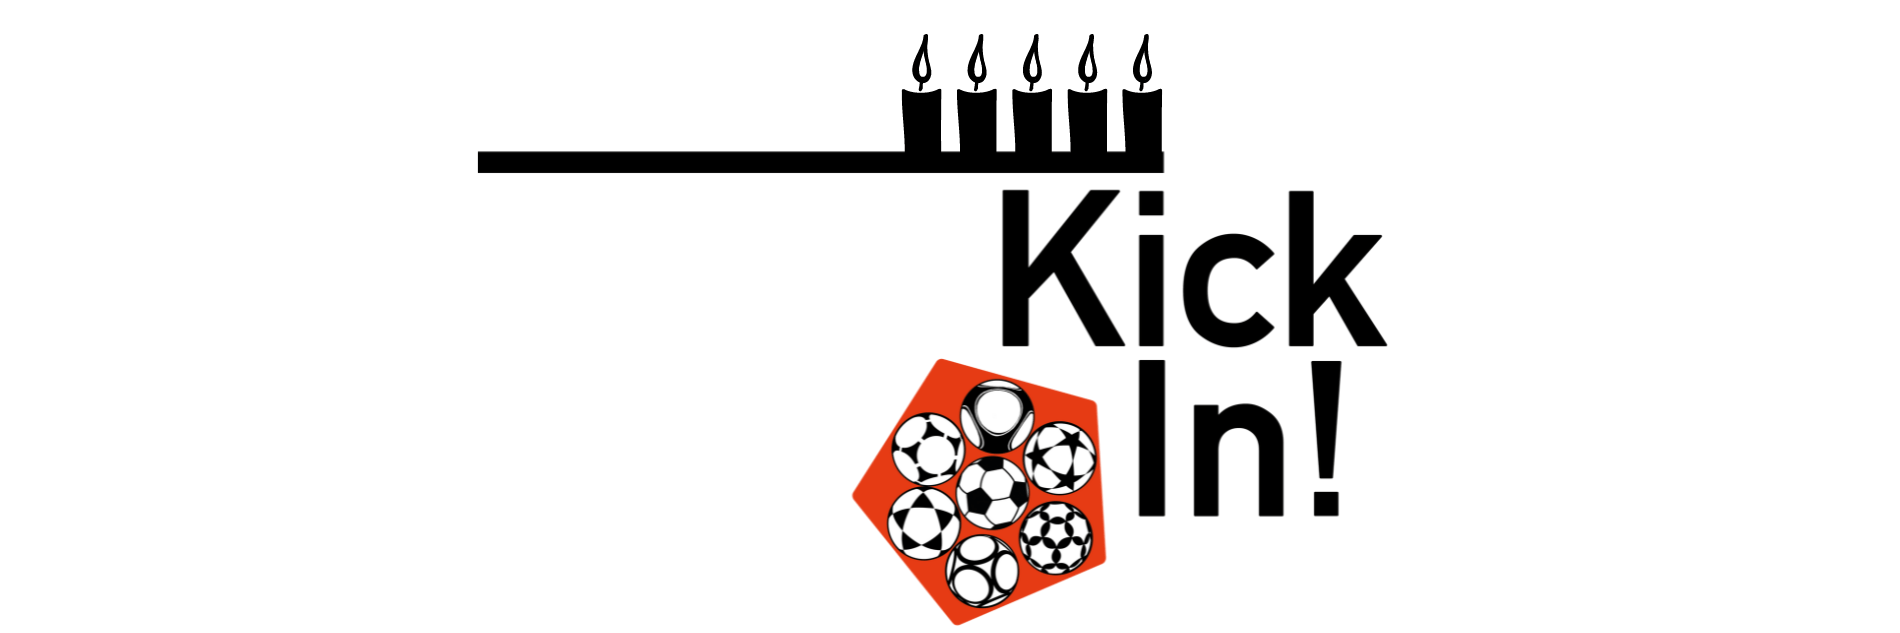 KickIn!-Logo mit sieben unterschiedlichen Fußbällen in einem Fünfeck, dazu fünf Kerzen.